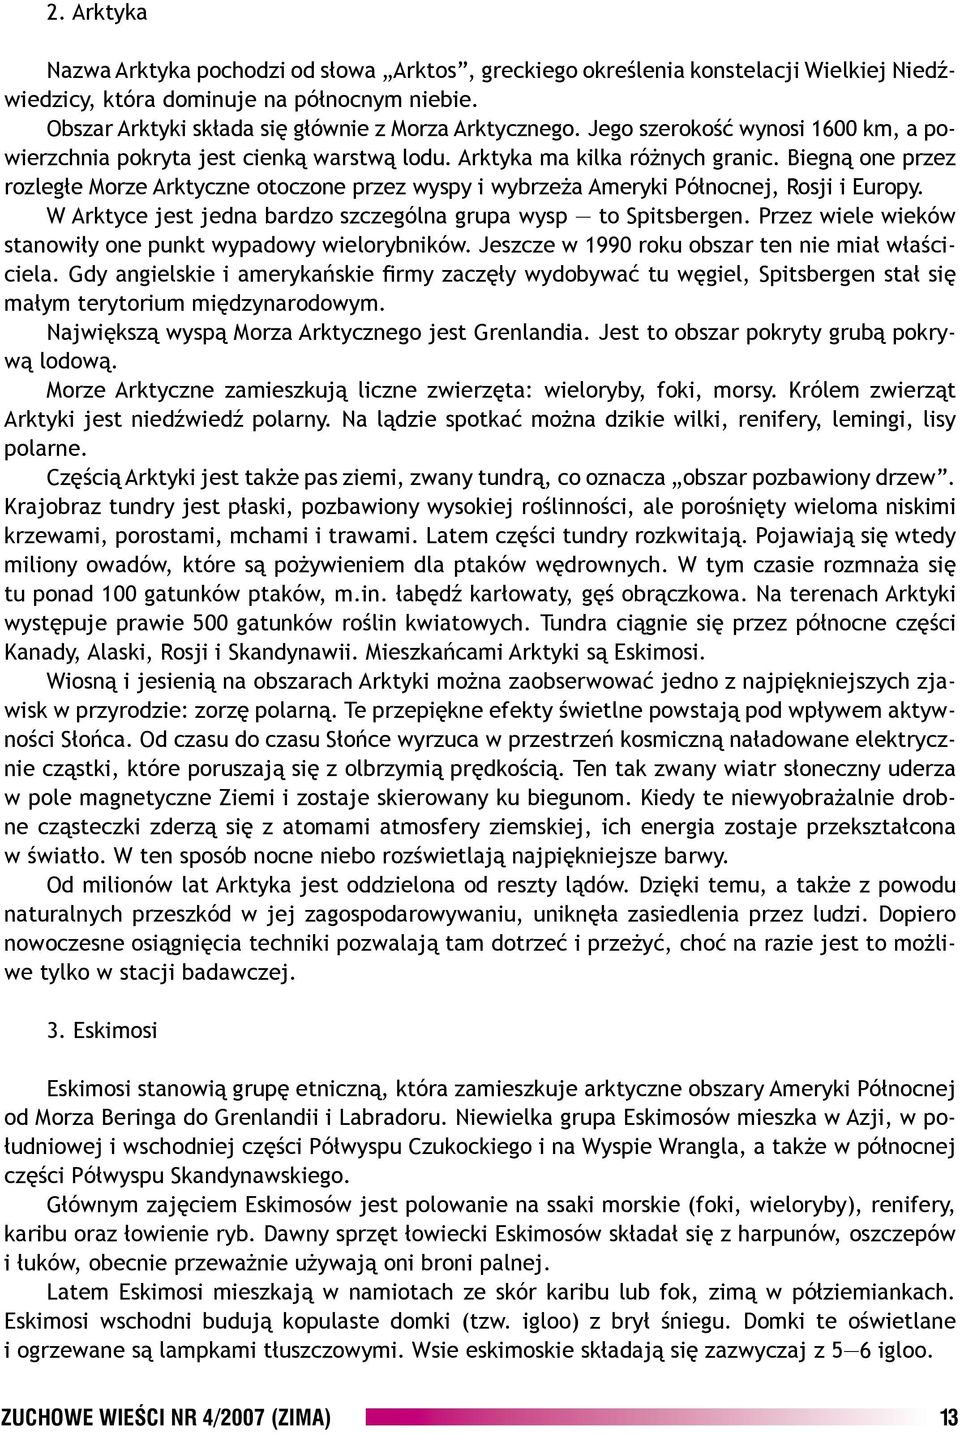 ZUCHOWE WIEÂCI NR 4/2007 (ZIMA) - PDF Darmowe pobieranie